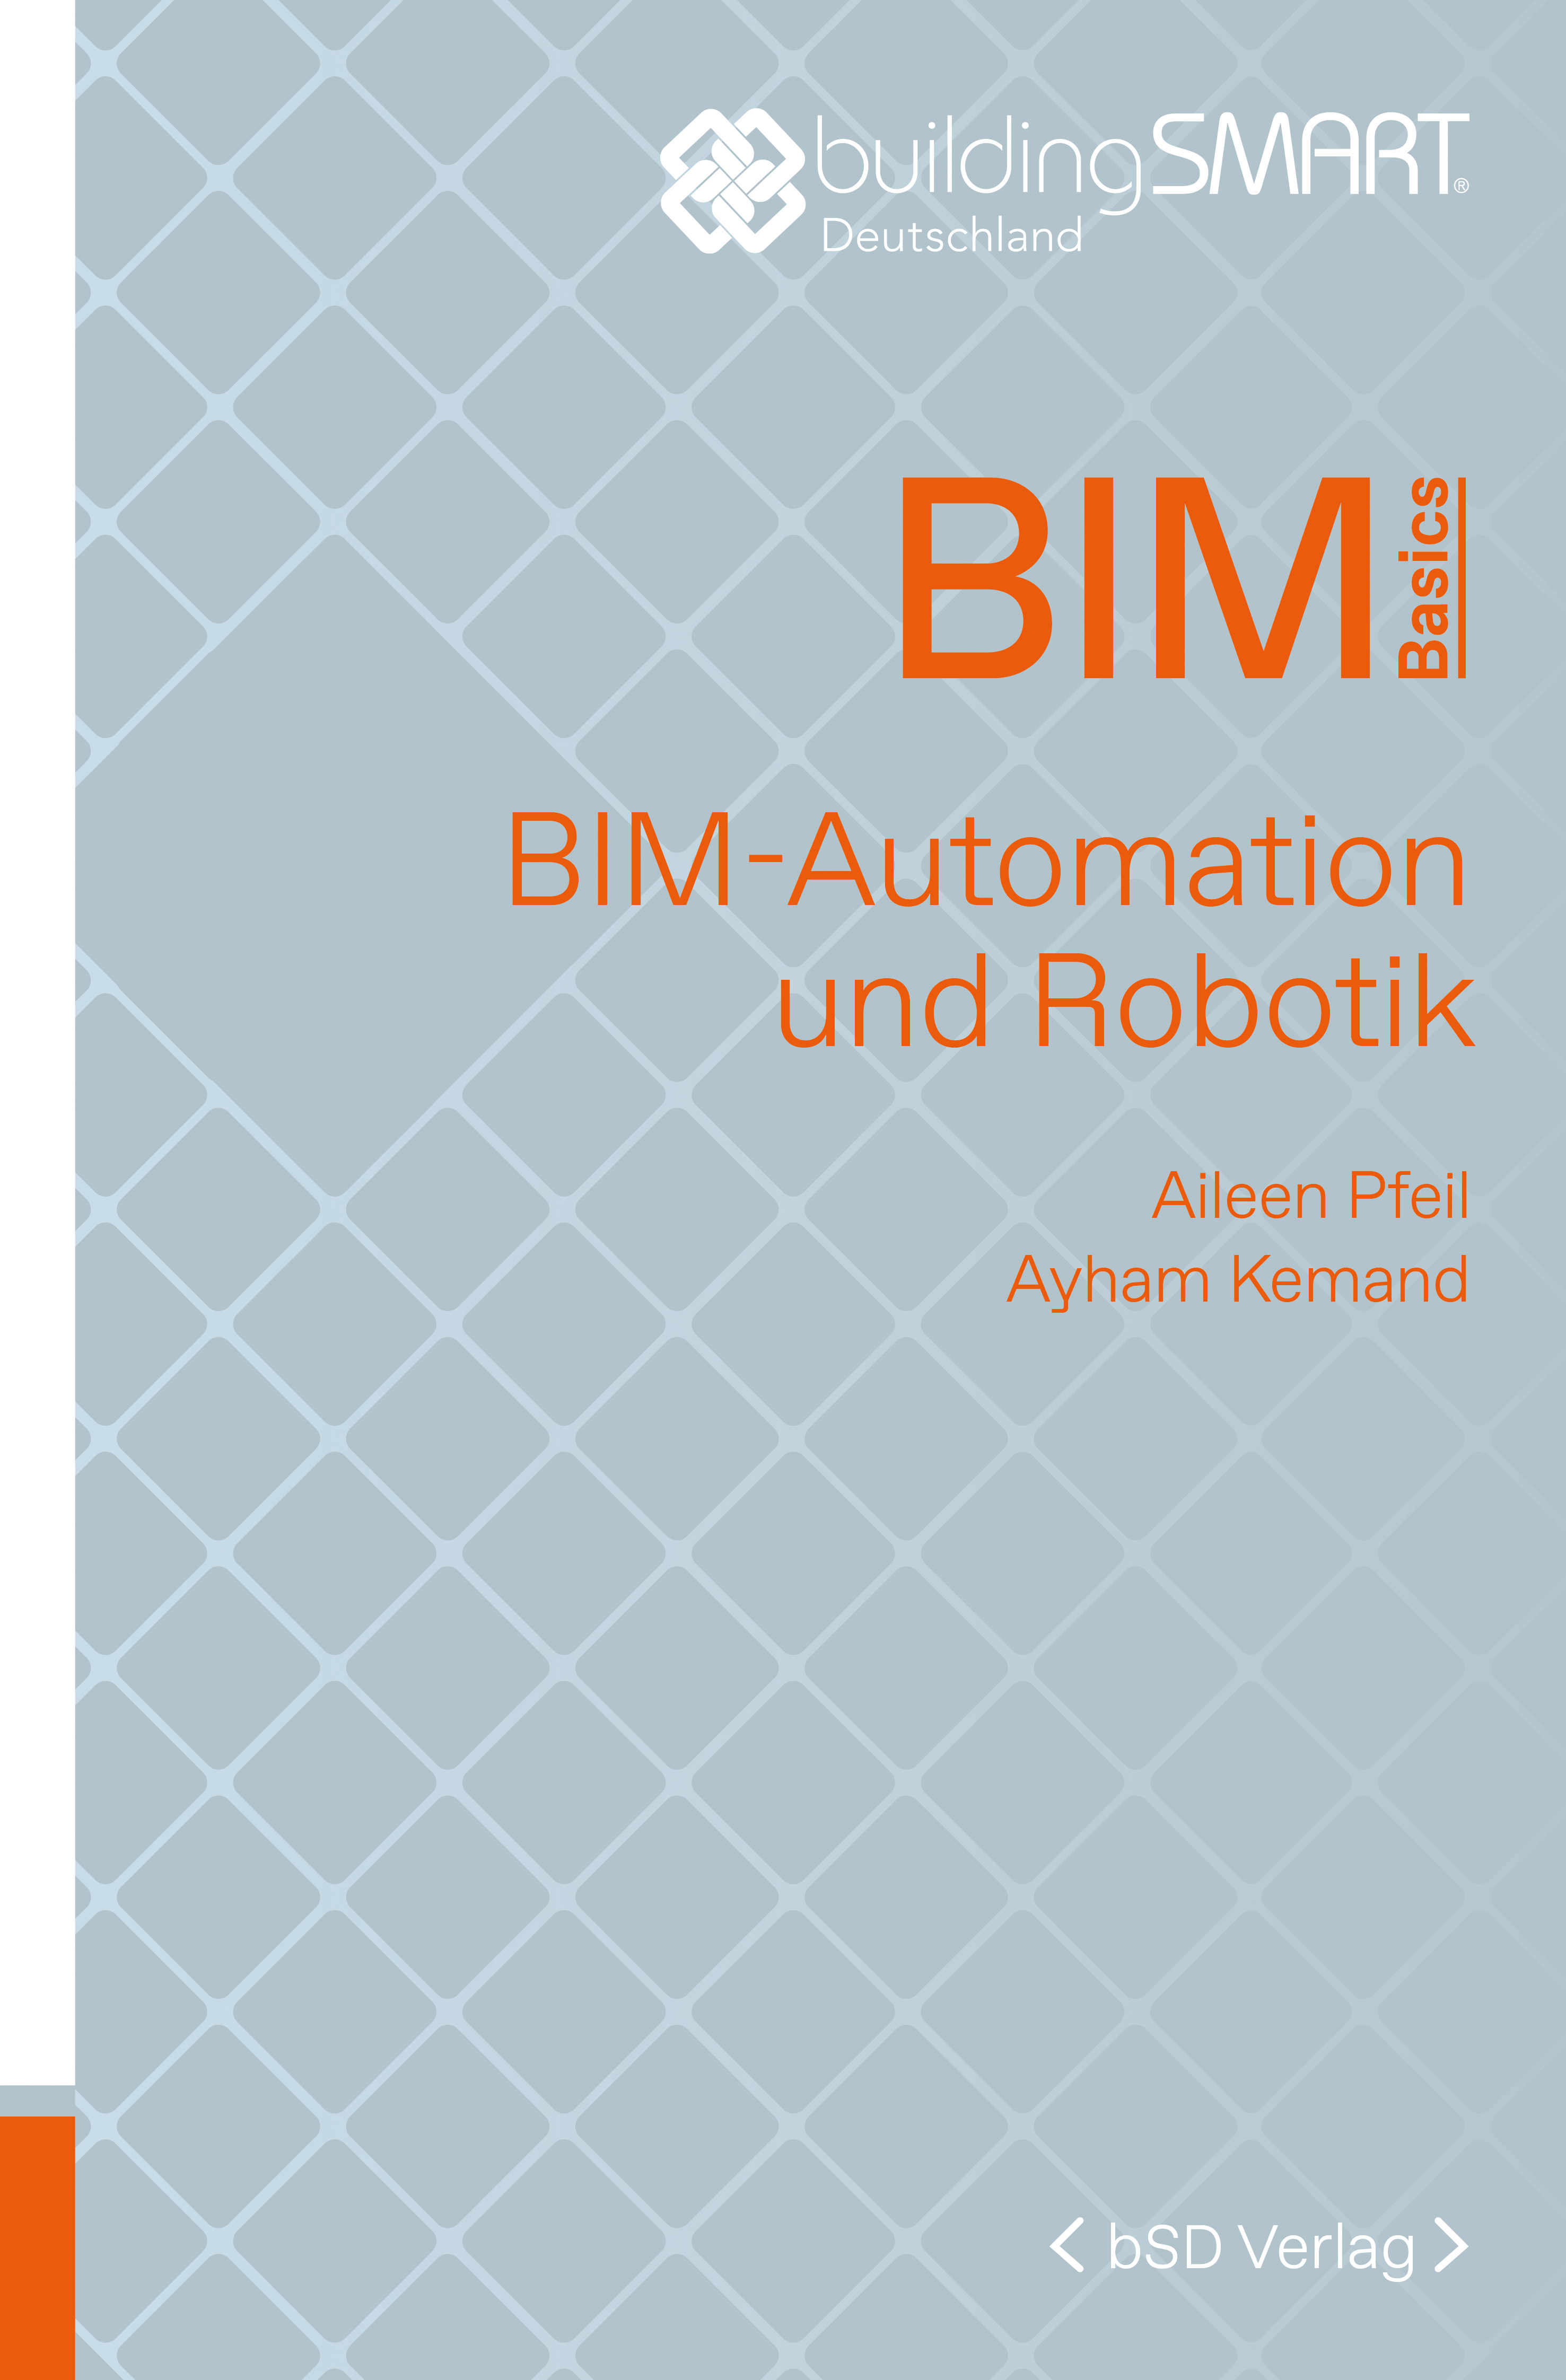 bSD Verlag/BIM Basics: BIM-Automation und Robotik